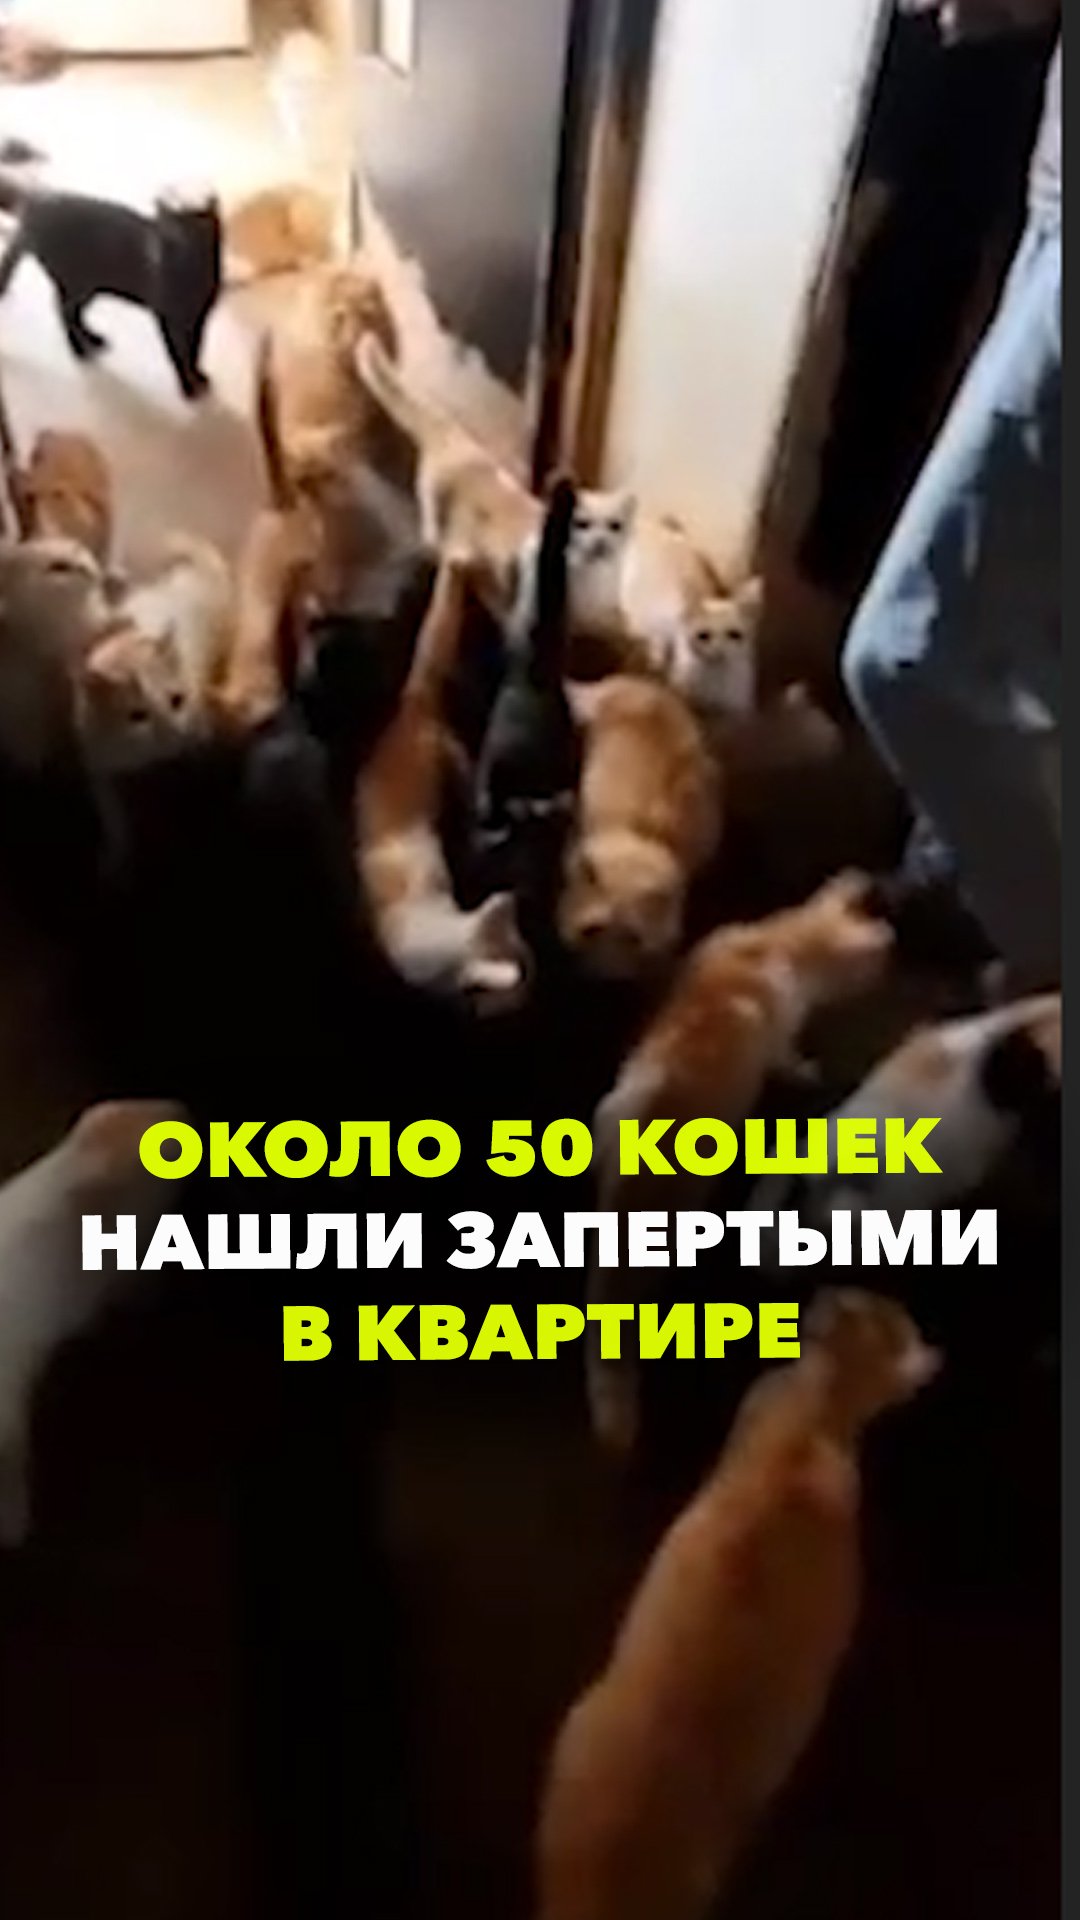 Жительница Краснодара заперла в квартире около 50 кошек